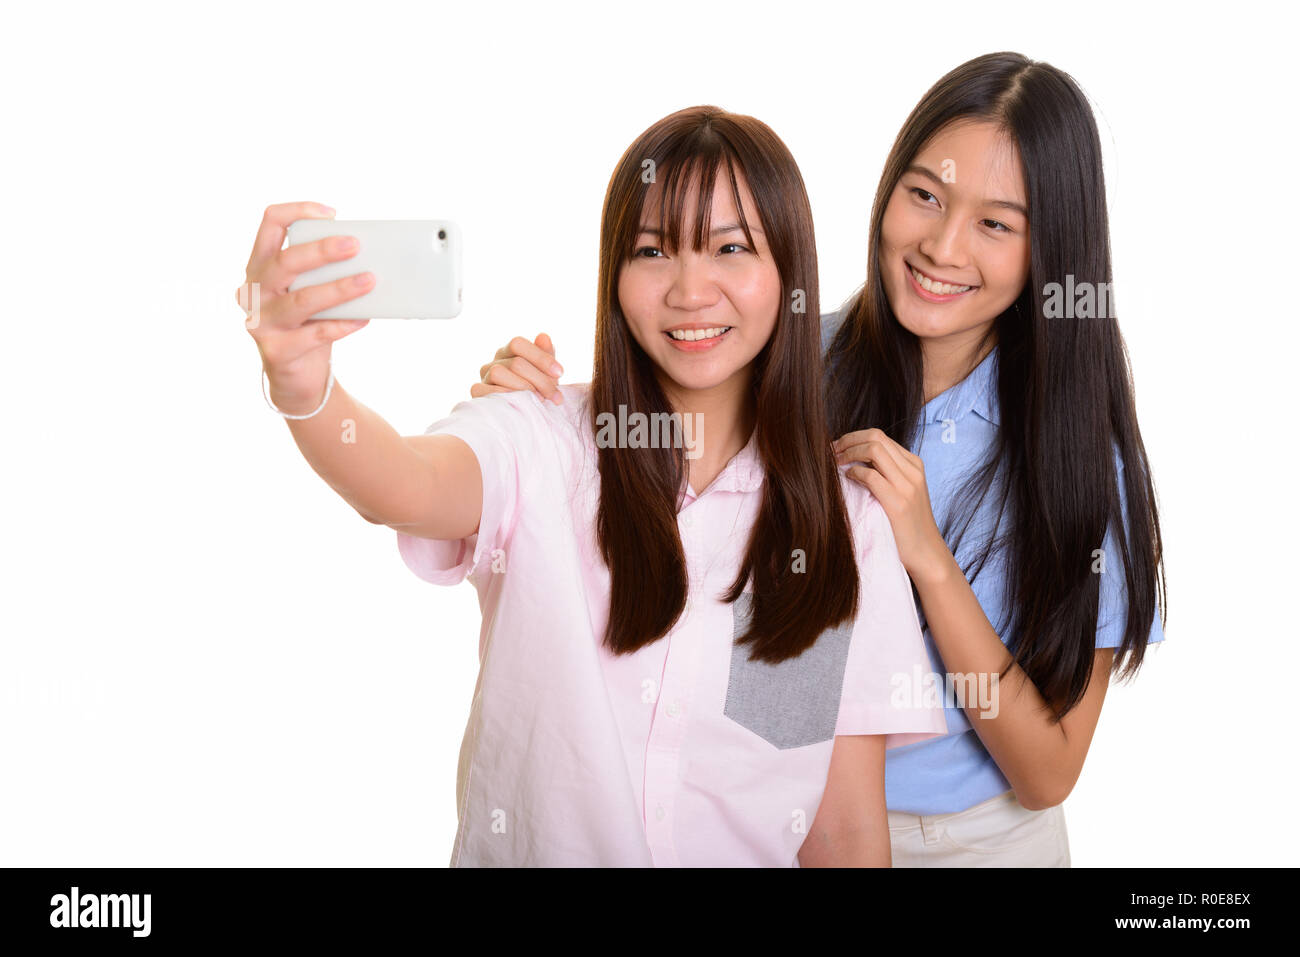 Zwei junge gerne asiatische Mädchen lächelnd und unter selfie wi Stockfoto